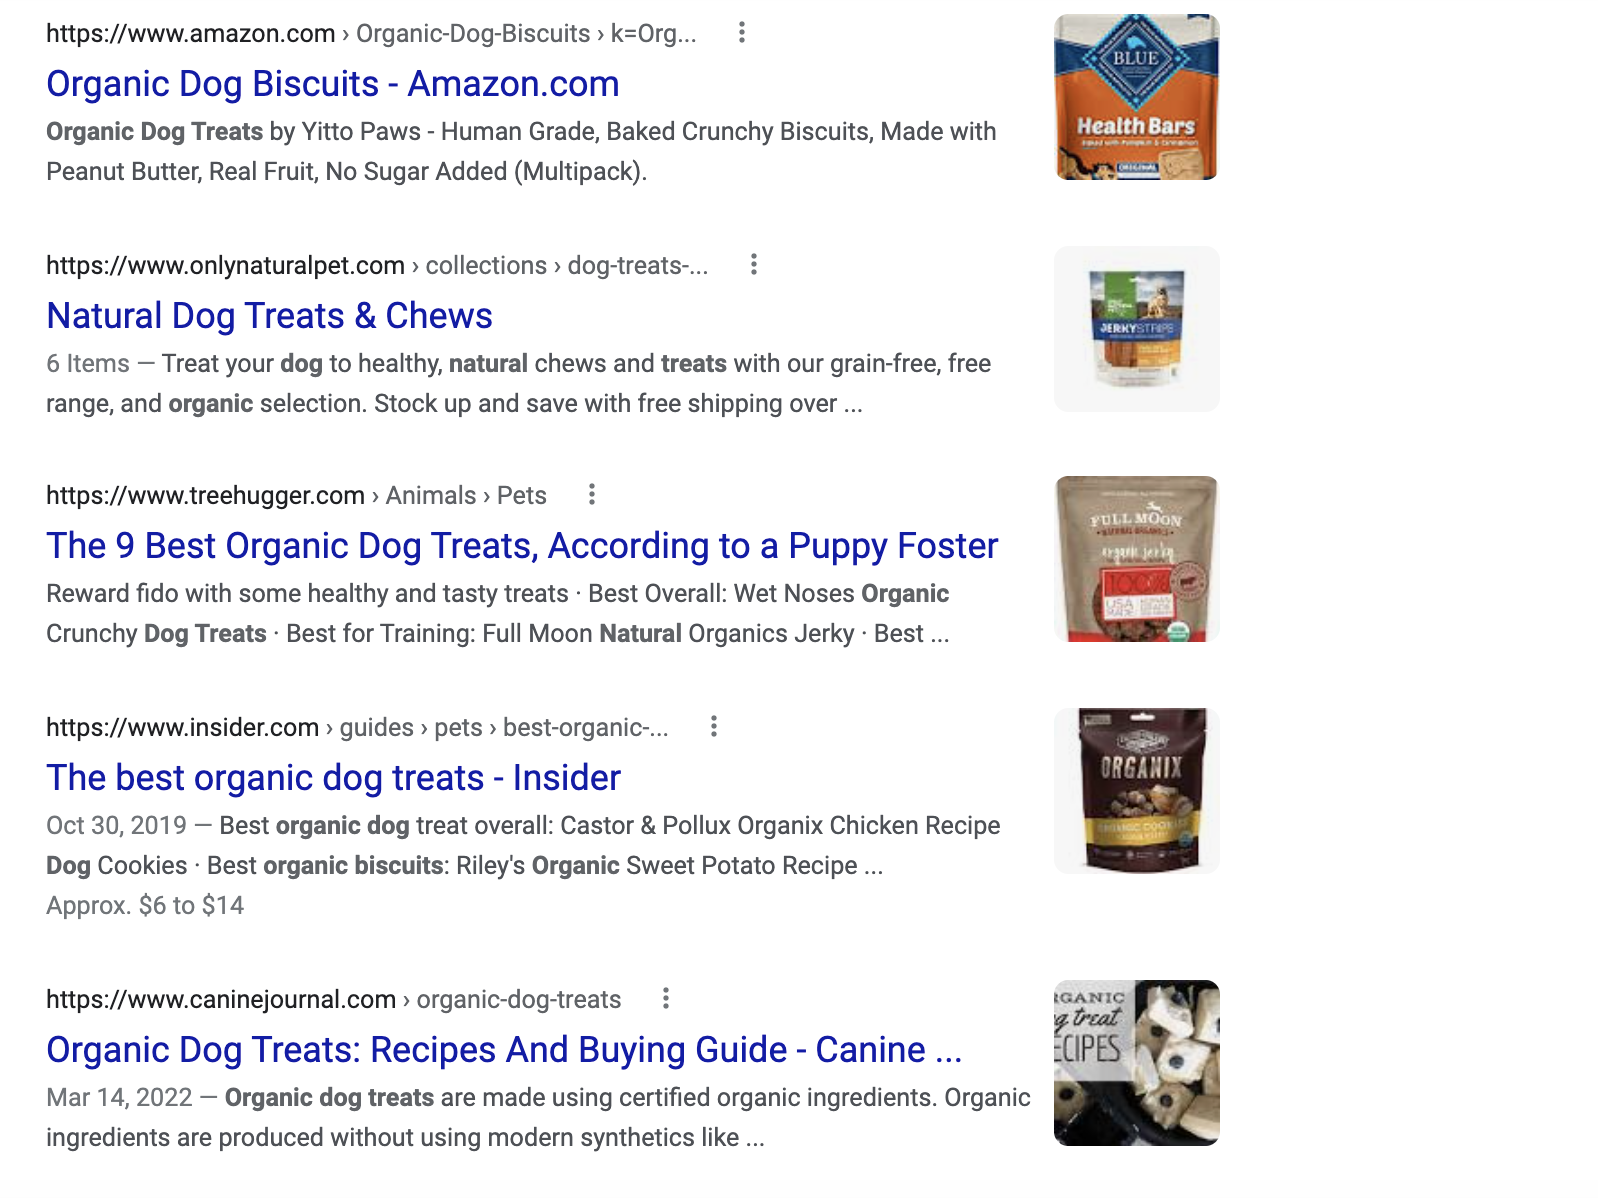 Résultats de recherche de la première page de Google pour « friandises biologiques pour chiens »